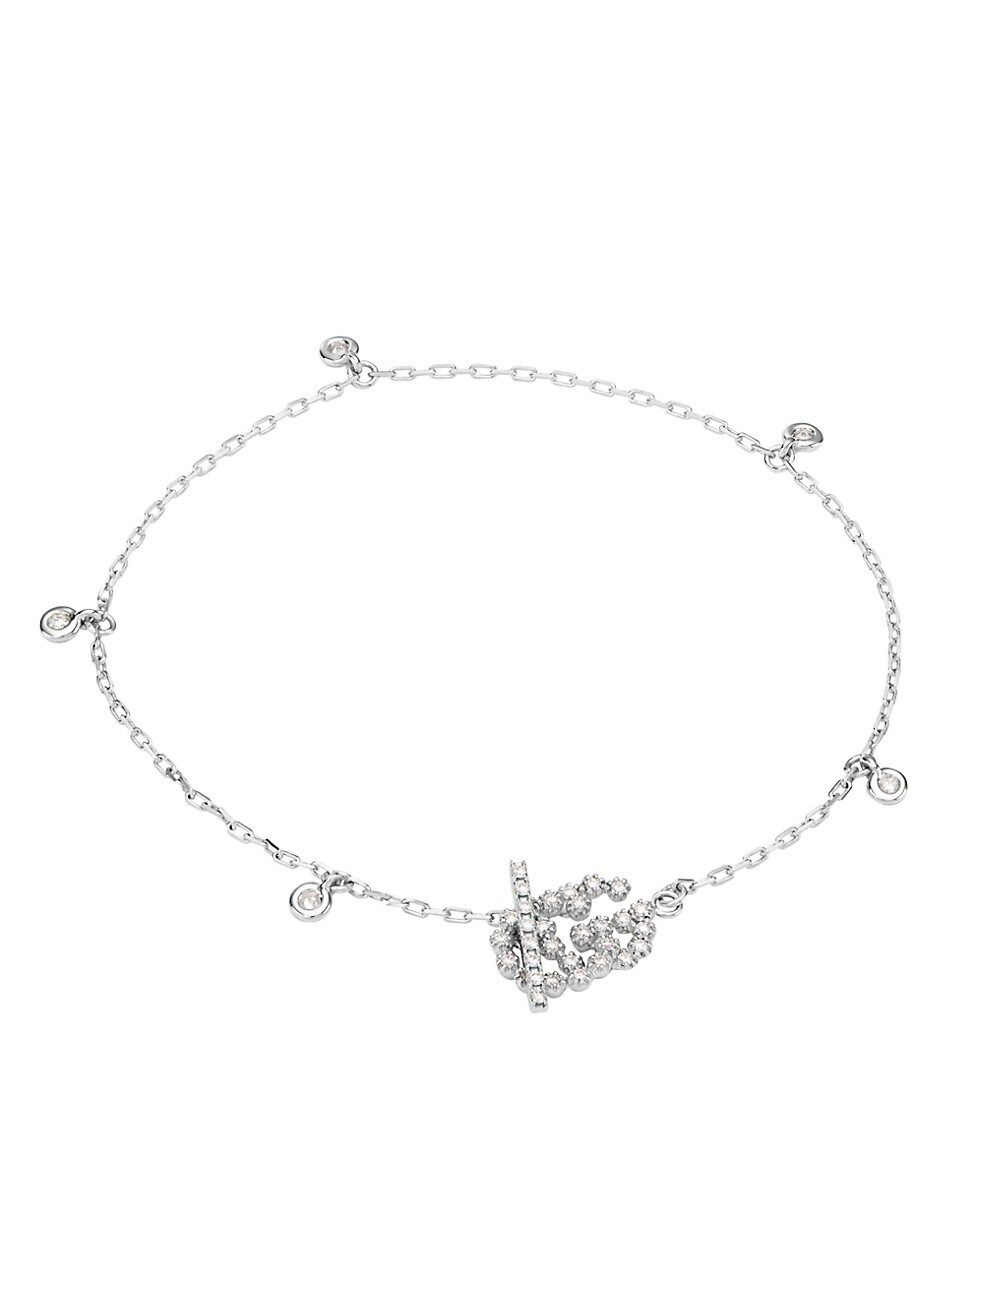 Running G 18K White Gold & Diamond Chain Bracelet | Saks Fifth Avenue